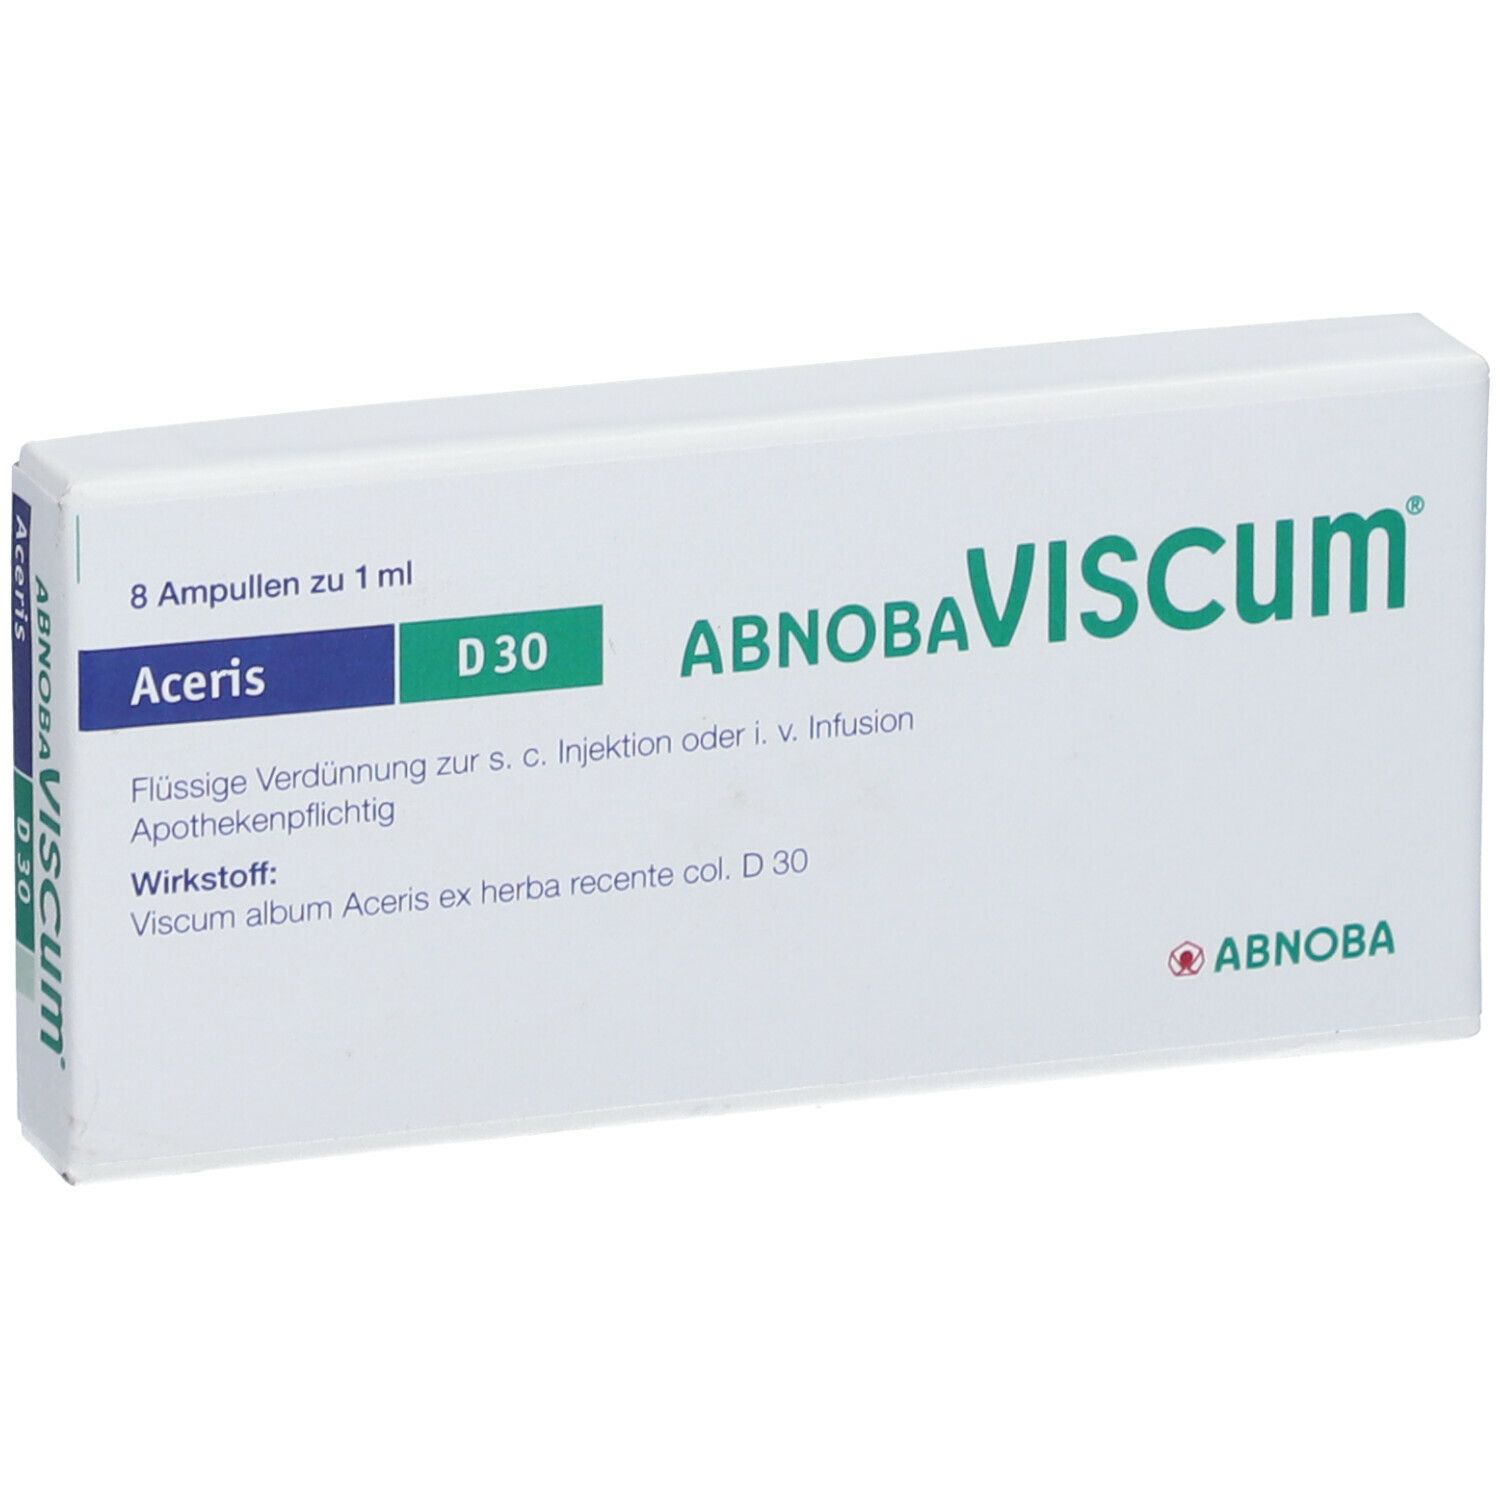 AbnobaVISCUM® Aceris D30 Ampullen